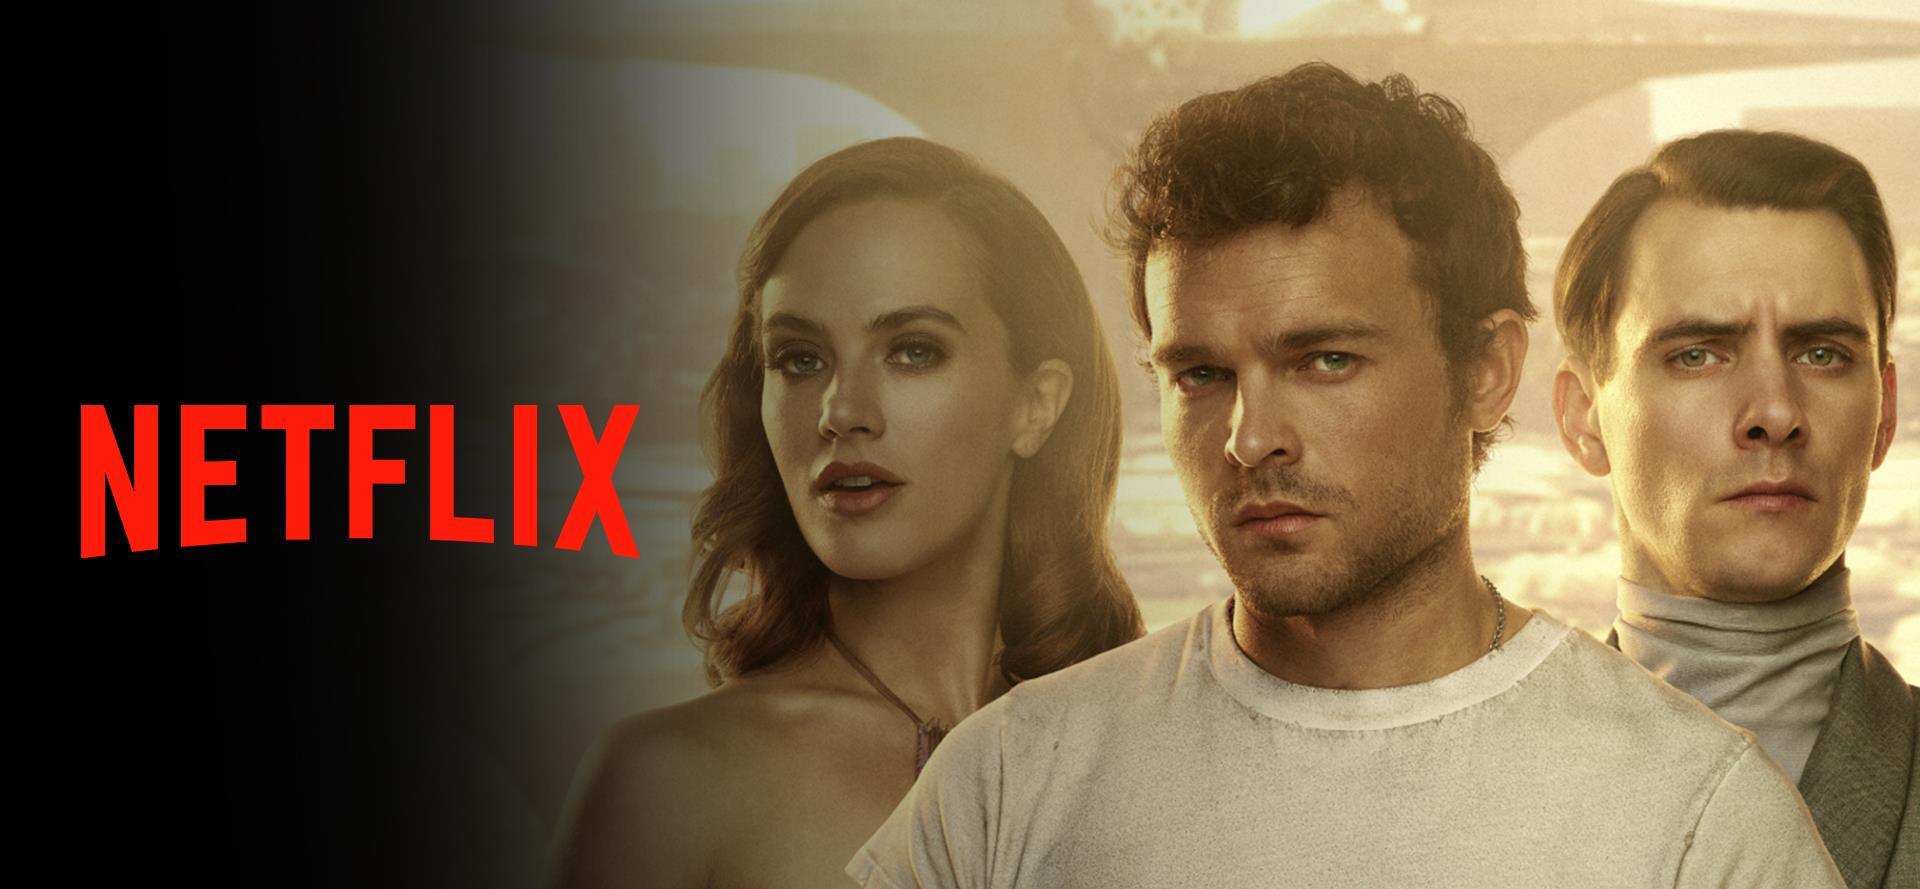 A Szép új világ története a Netflixen is!